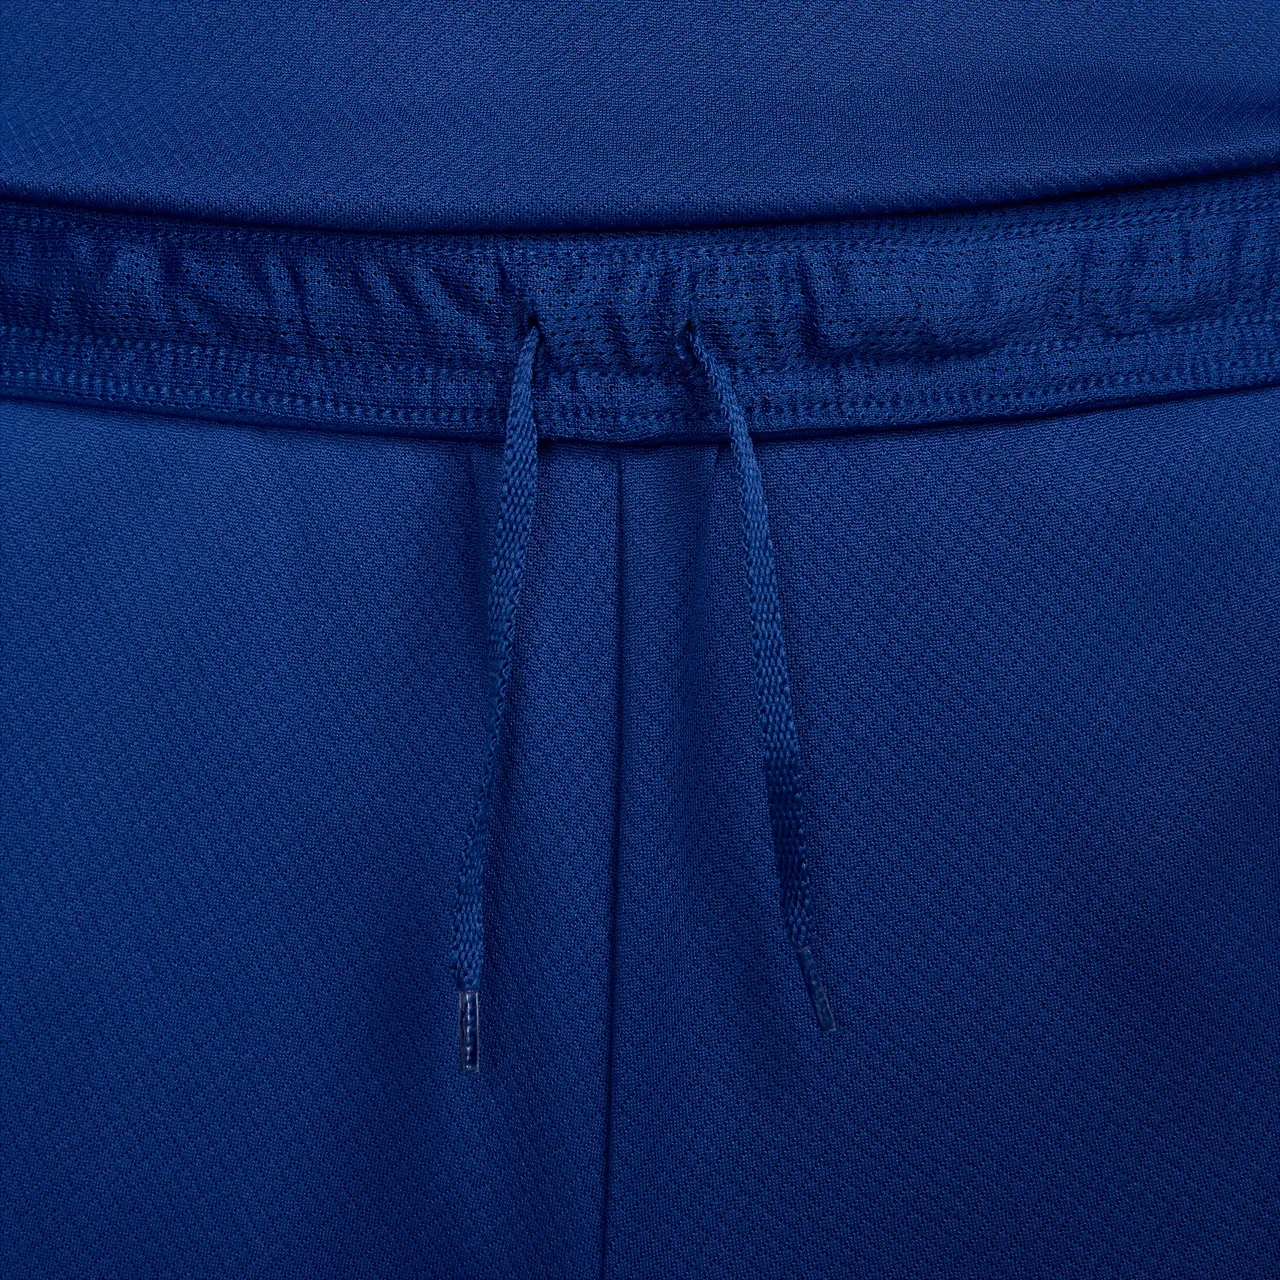 Nederland Strike Nike Dri-FIT knit voetbalshorts voor heren - Blauw